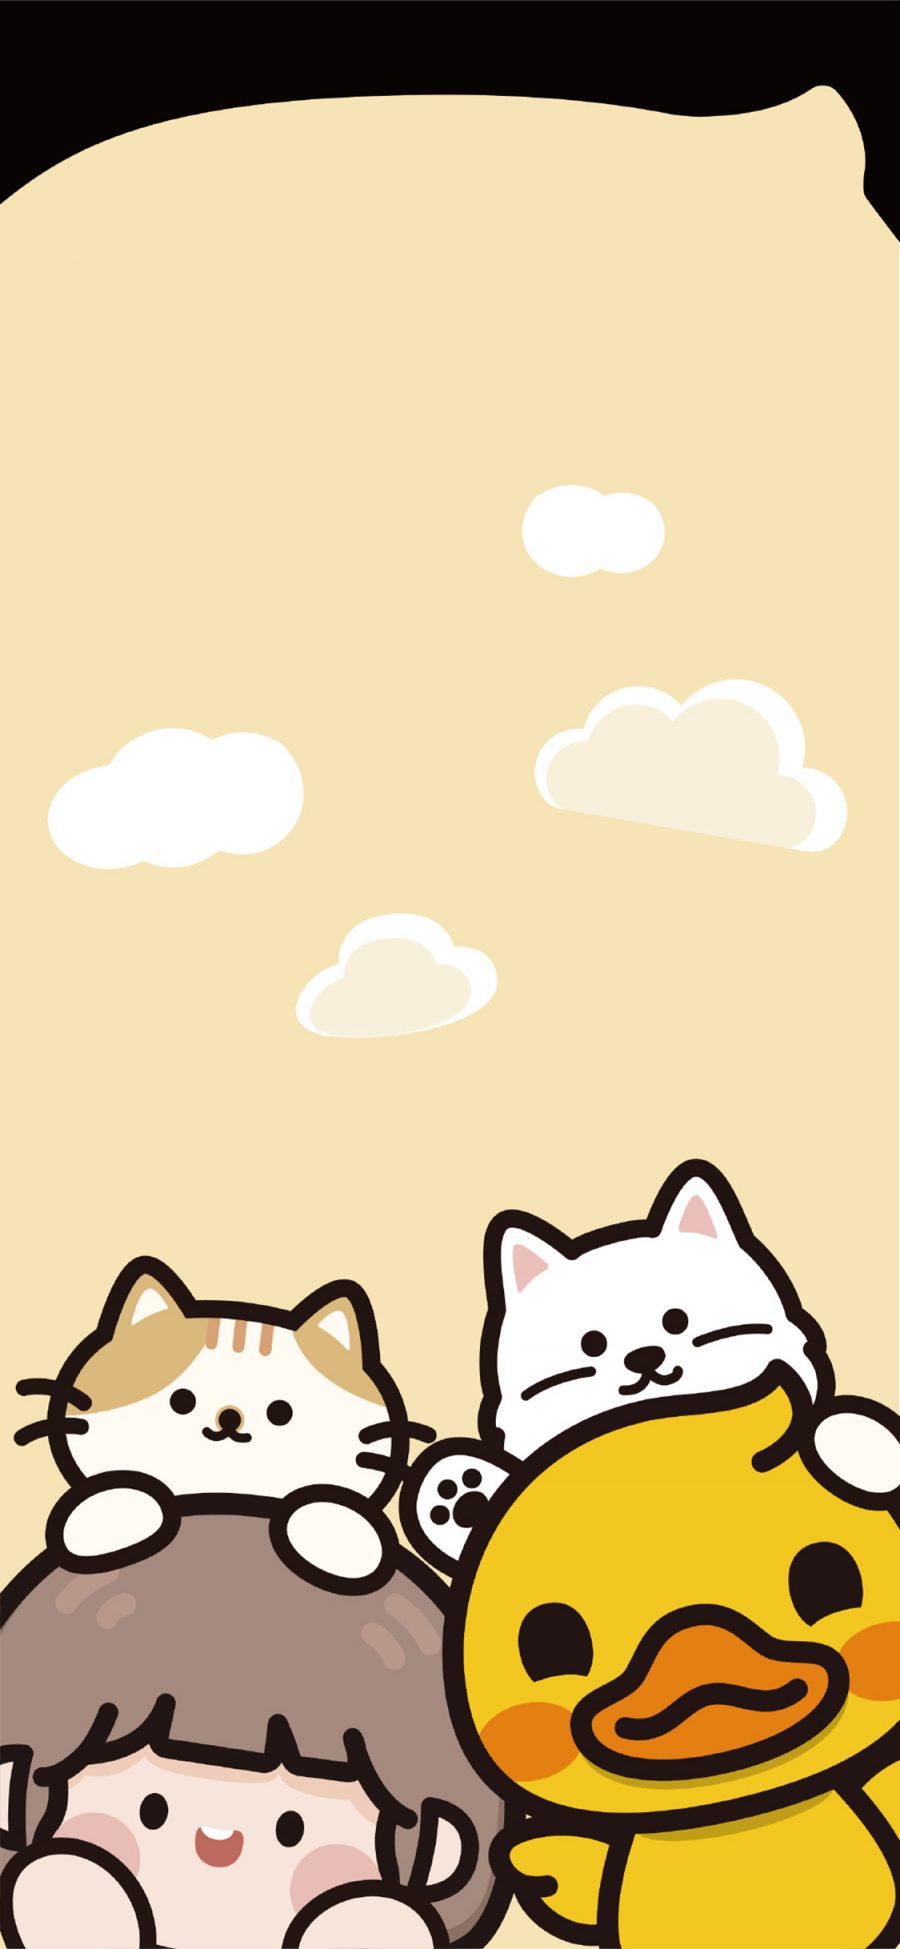 [2436×1125]肉肉酱 黄色 小黄鸭 猫咪 可爱 苹果手机动漫壁纸图片